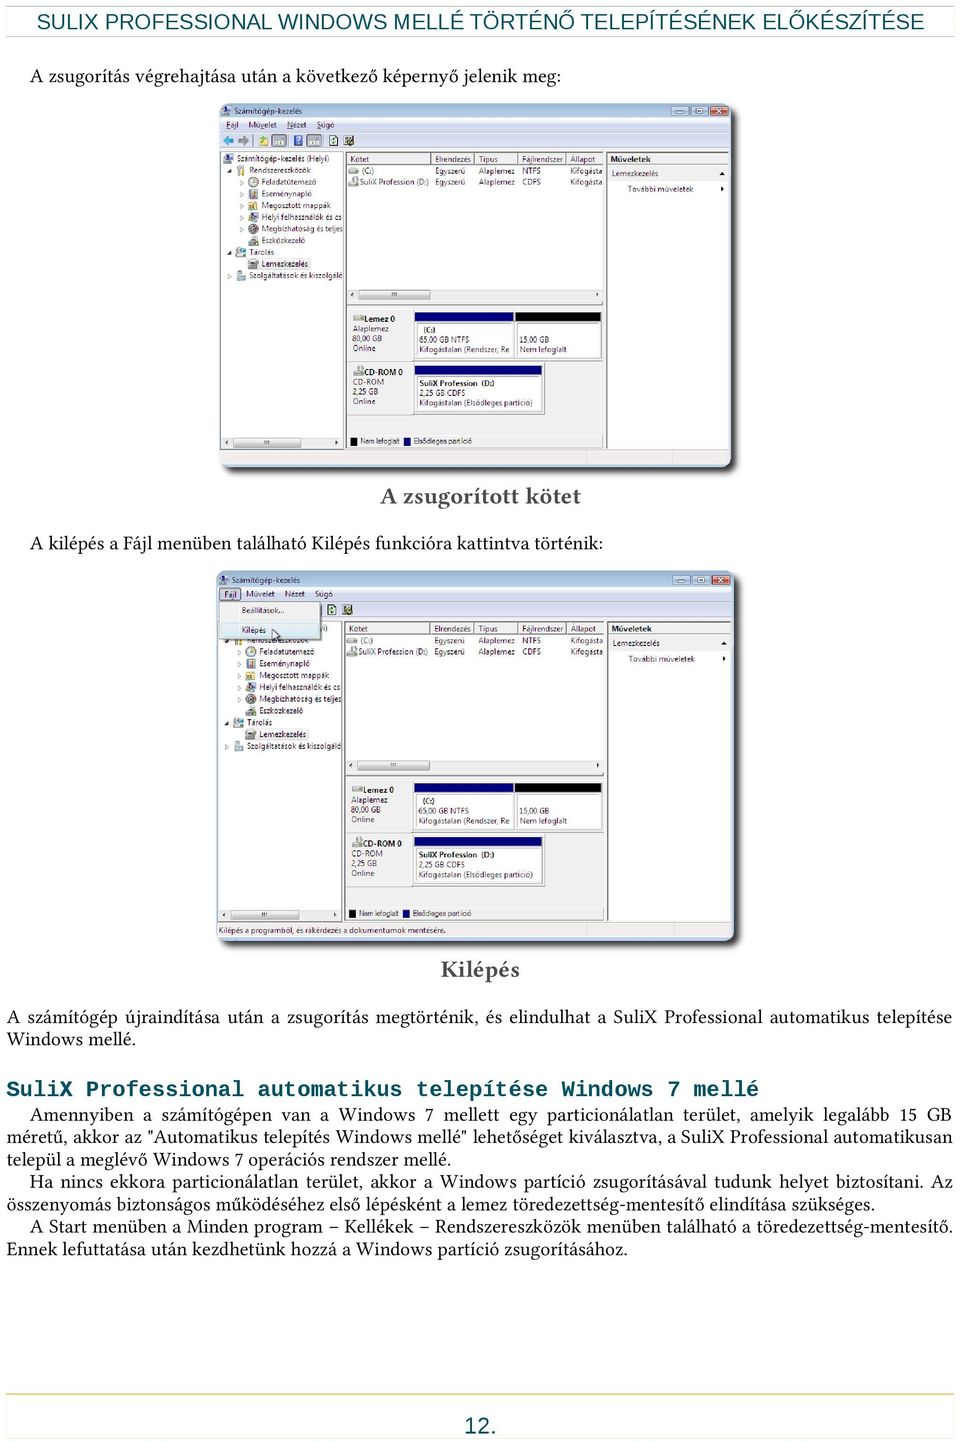 SuliX Professional automatikus telepítése Windows 7 mellé Amennyiben a számítógépen van a Windows 7 mellett egy particionálatlan terület, amelyik legalább 15 GB méretű, akkor az "Automatikus